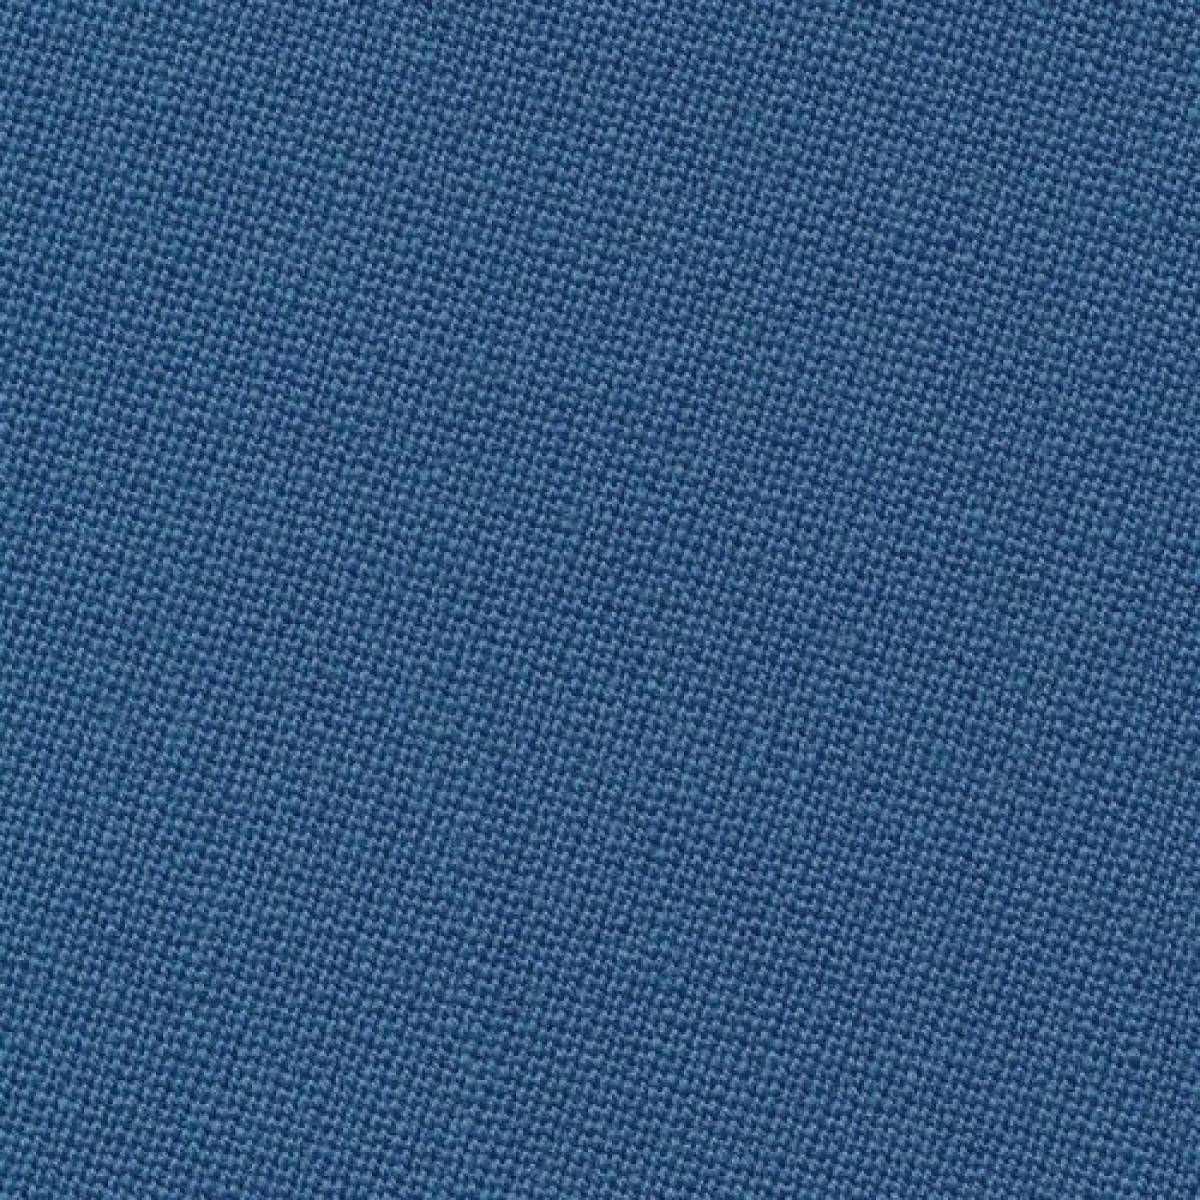 I.Simonis 860/195 electric blue